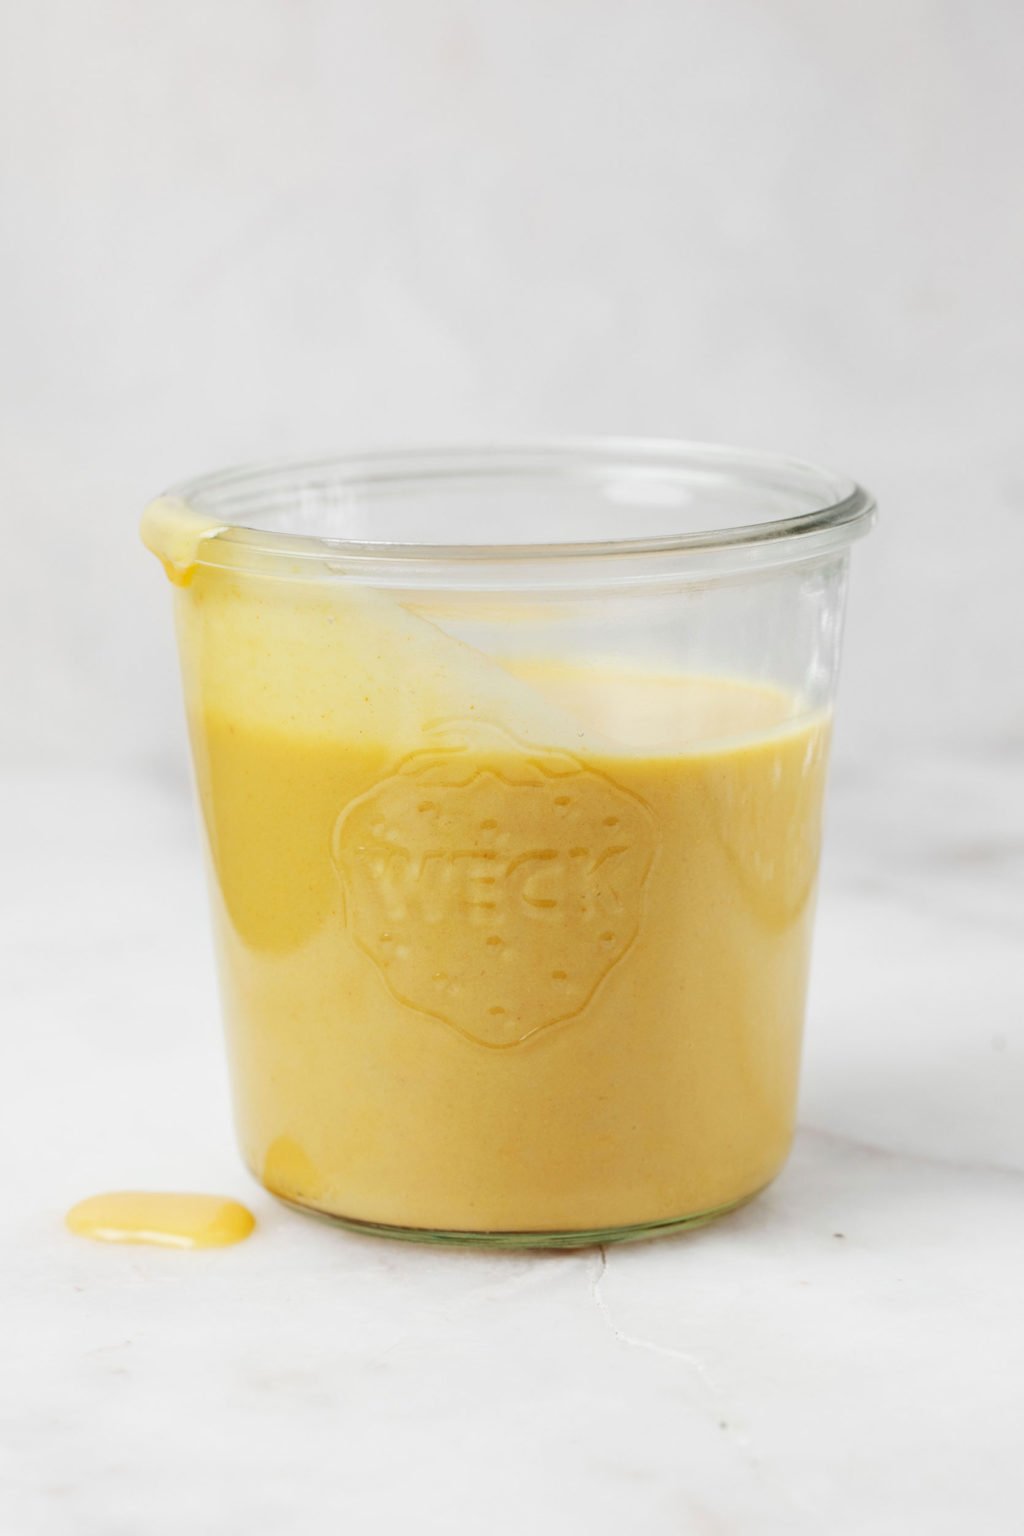 Un tarro de albañil contiene una salsa de queso cheddar vegano amarillo.